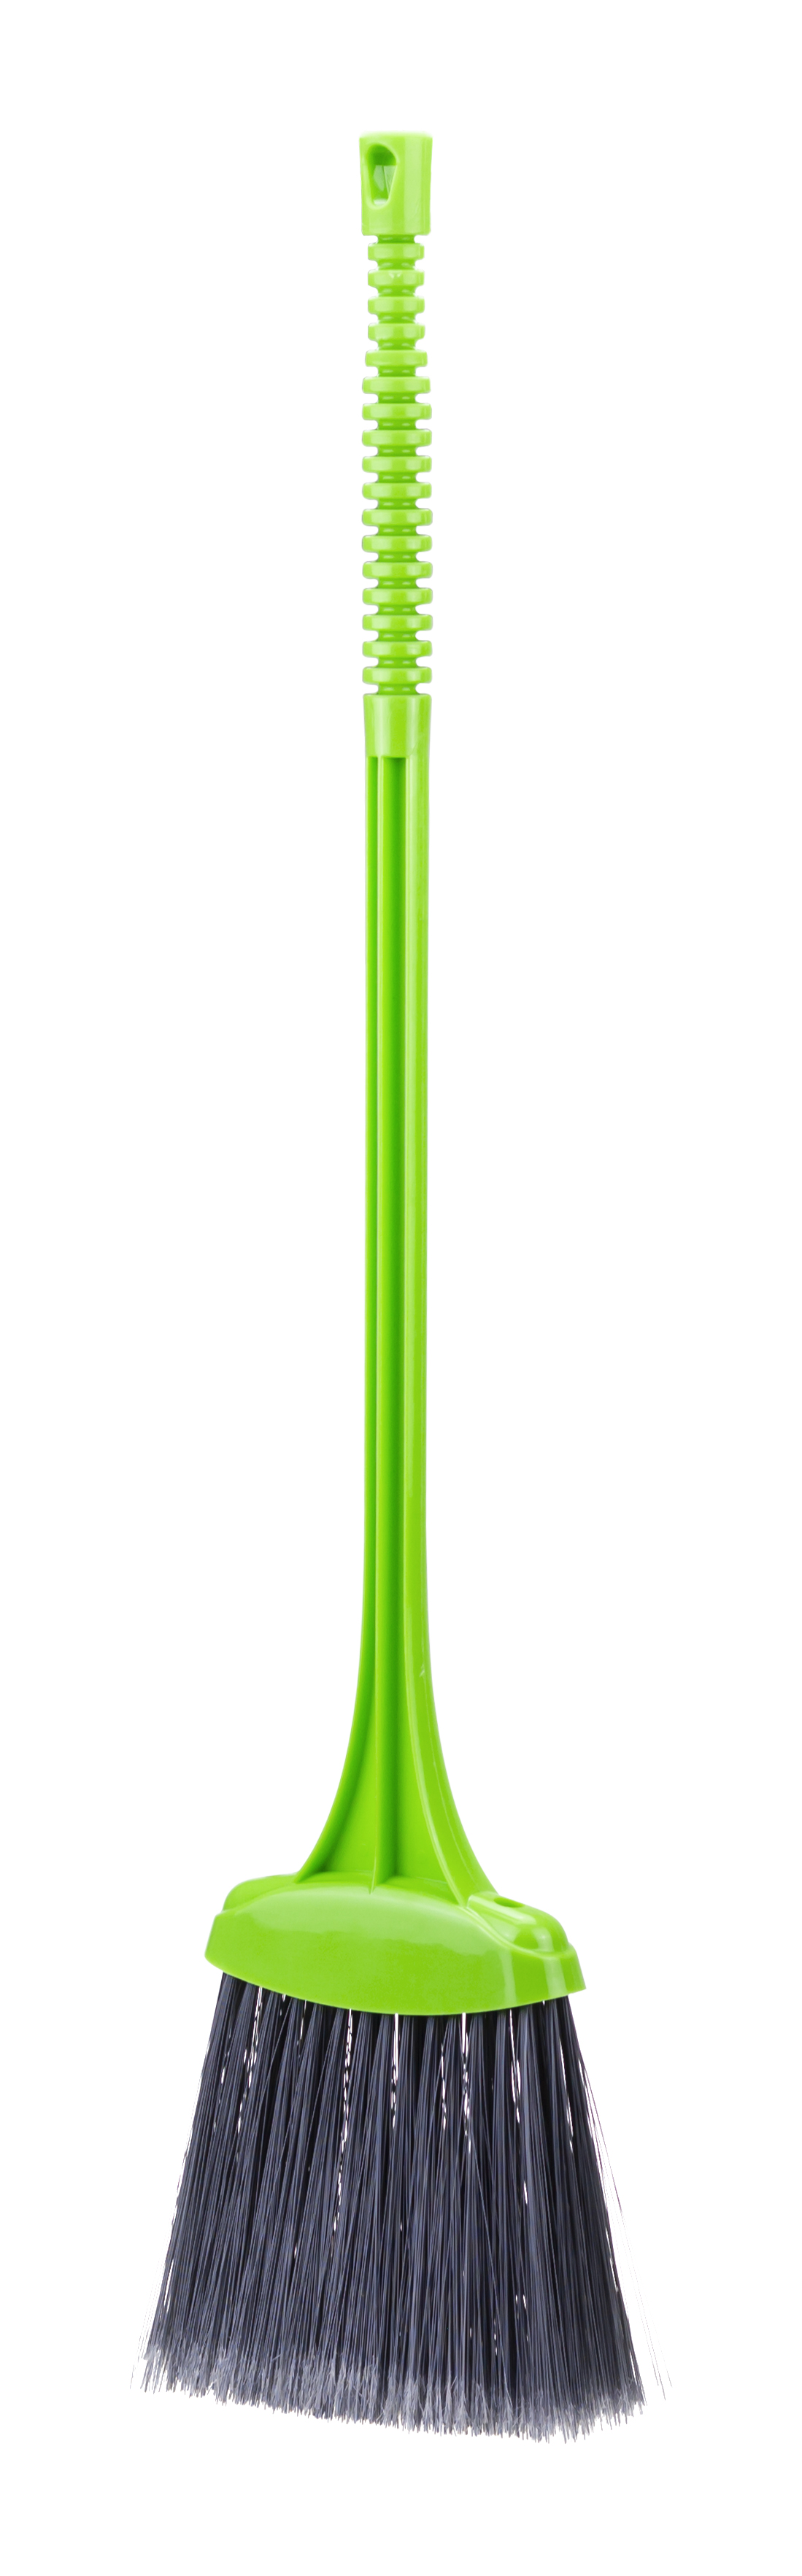 Щетка-веник IDEA М5110 ярко-зеленый